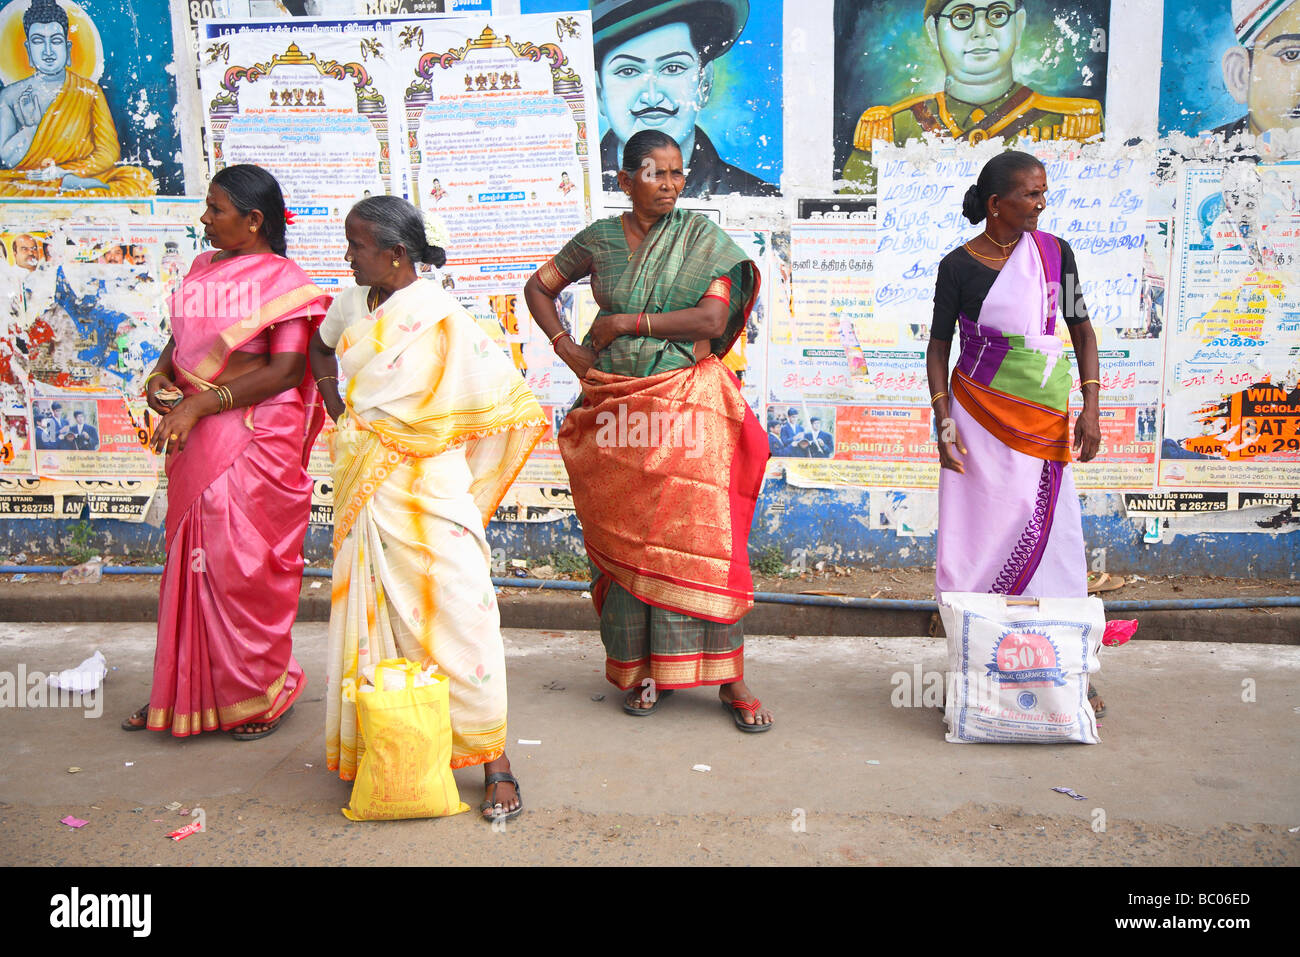 L'Inde, le Tamil Nadu, Annur station de bus avec les gens Banque D'Images